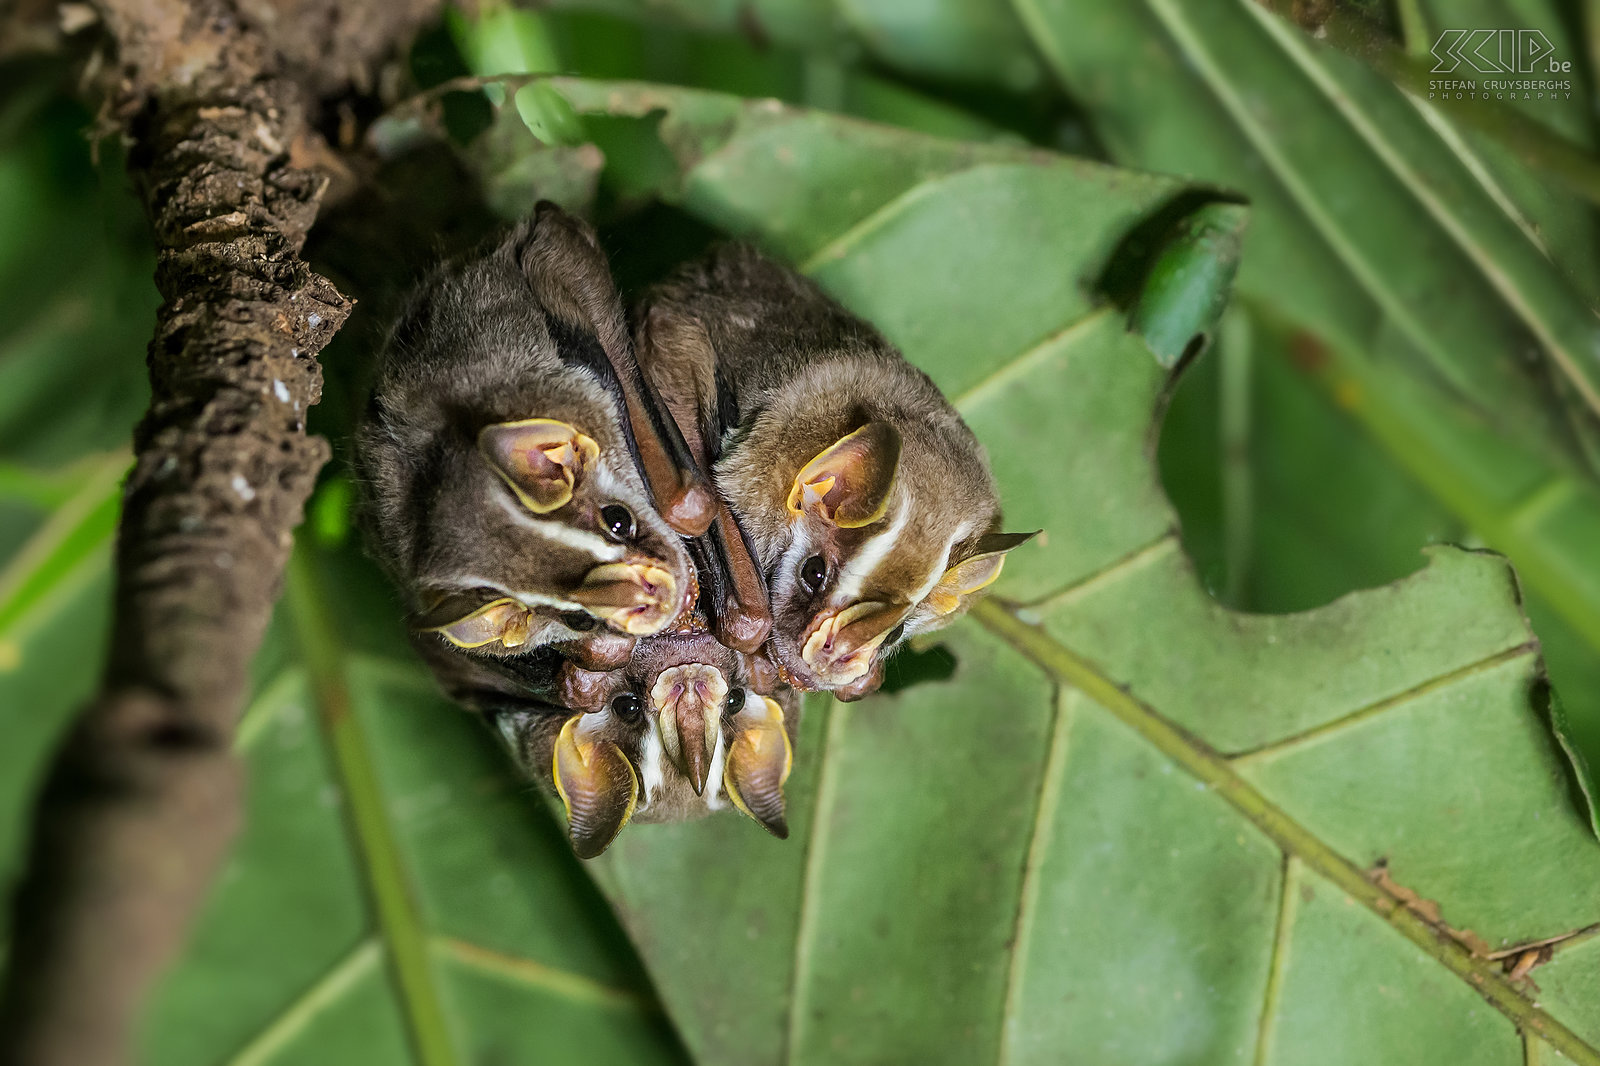 La Selva - Prieelvleermuizen De prieelvleermuizen (tent-making bat) is een middelgrote vleermuis die voorkomt in laagland bossen in Costa Rica. Hun kop wordt gekenmerkt door een vlezige brede neus en vier witte strepen. Ze hebben een boeiend en merkwaardig gedrag; ze bijten de hoofdnerf van een groot blad door zodat de helft omgevouwen wordt en een soort tent creëert die beschutting biedt tegen zon, wind en tropische regens. Ze slapen overdag en 's nachts ze eten fruit en soms insecten, bloemen en nectar. <br />
 <br />
Ik wilde deze nachtdieren niet te veel verstoren, dus gebruikte ik mijn flits niet. Ik verhoogde de ISO en gebruikt een kleine LED-licht om wat bij te lichten. Stefan Cruysberghs